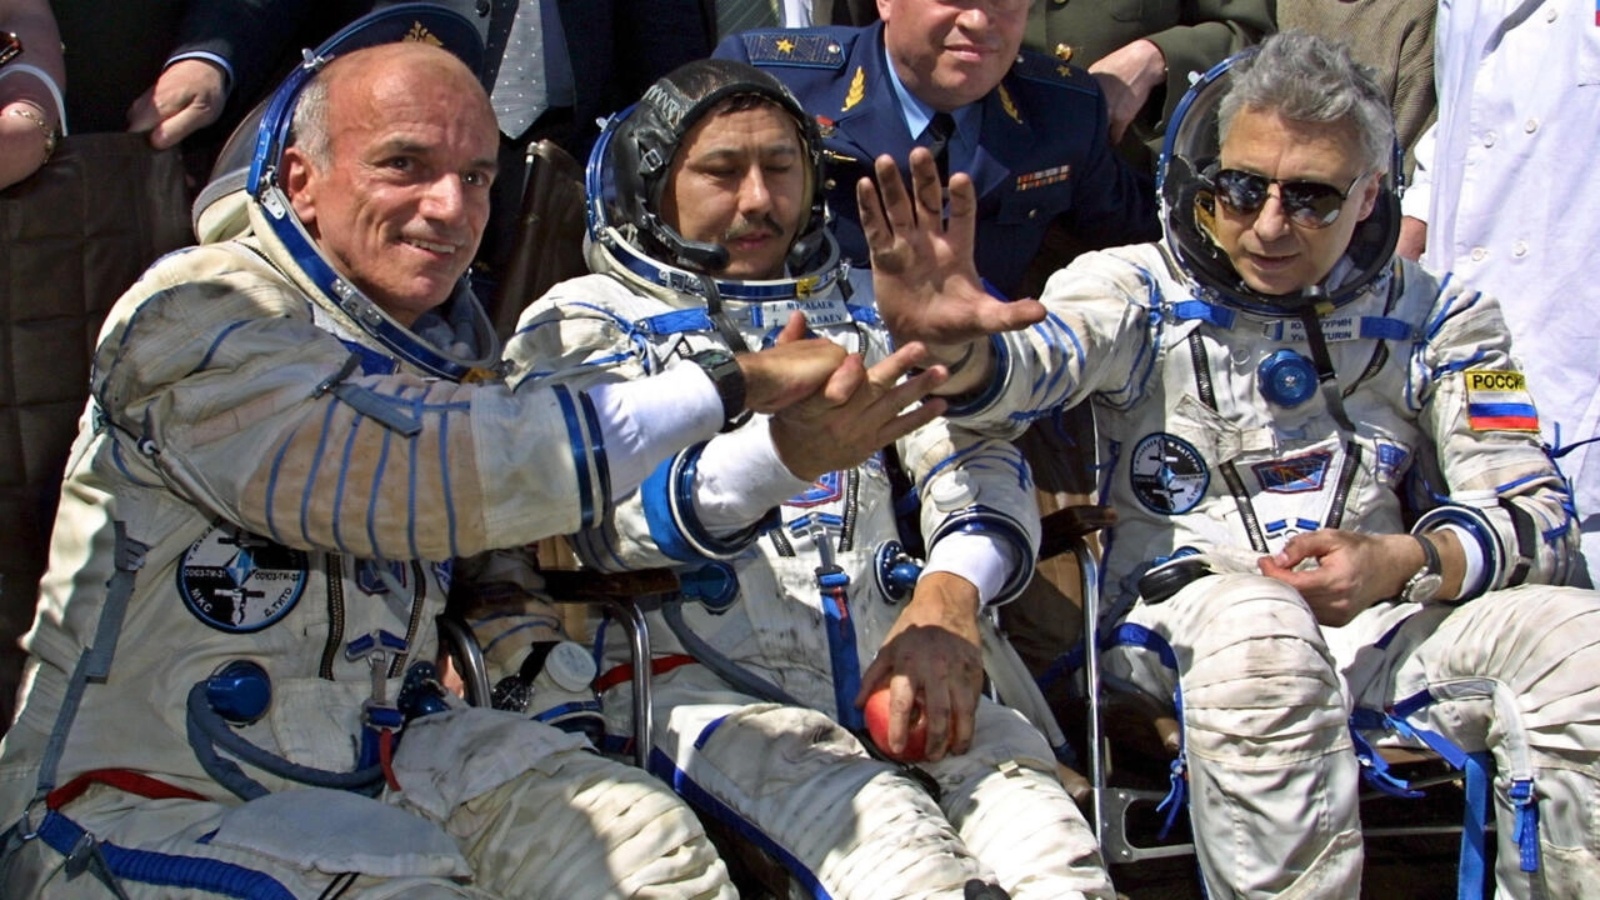 سائح الفضاء الأميركي دنيس تيتو (يسار) يصافح أفراد طاقمه بعد هبوطهم بالقرب من بلدة أركاليك الكازاخستانية على بعد 300 كيلومتر من آستانا، 06 مايو 2001